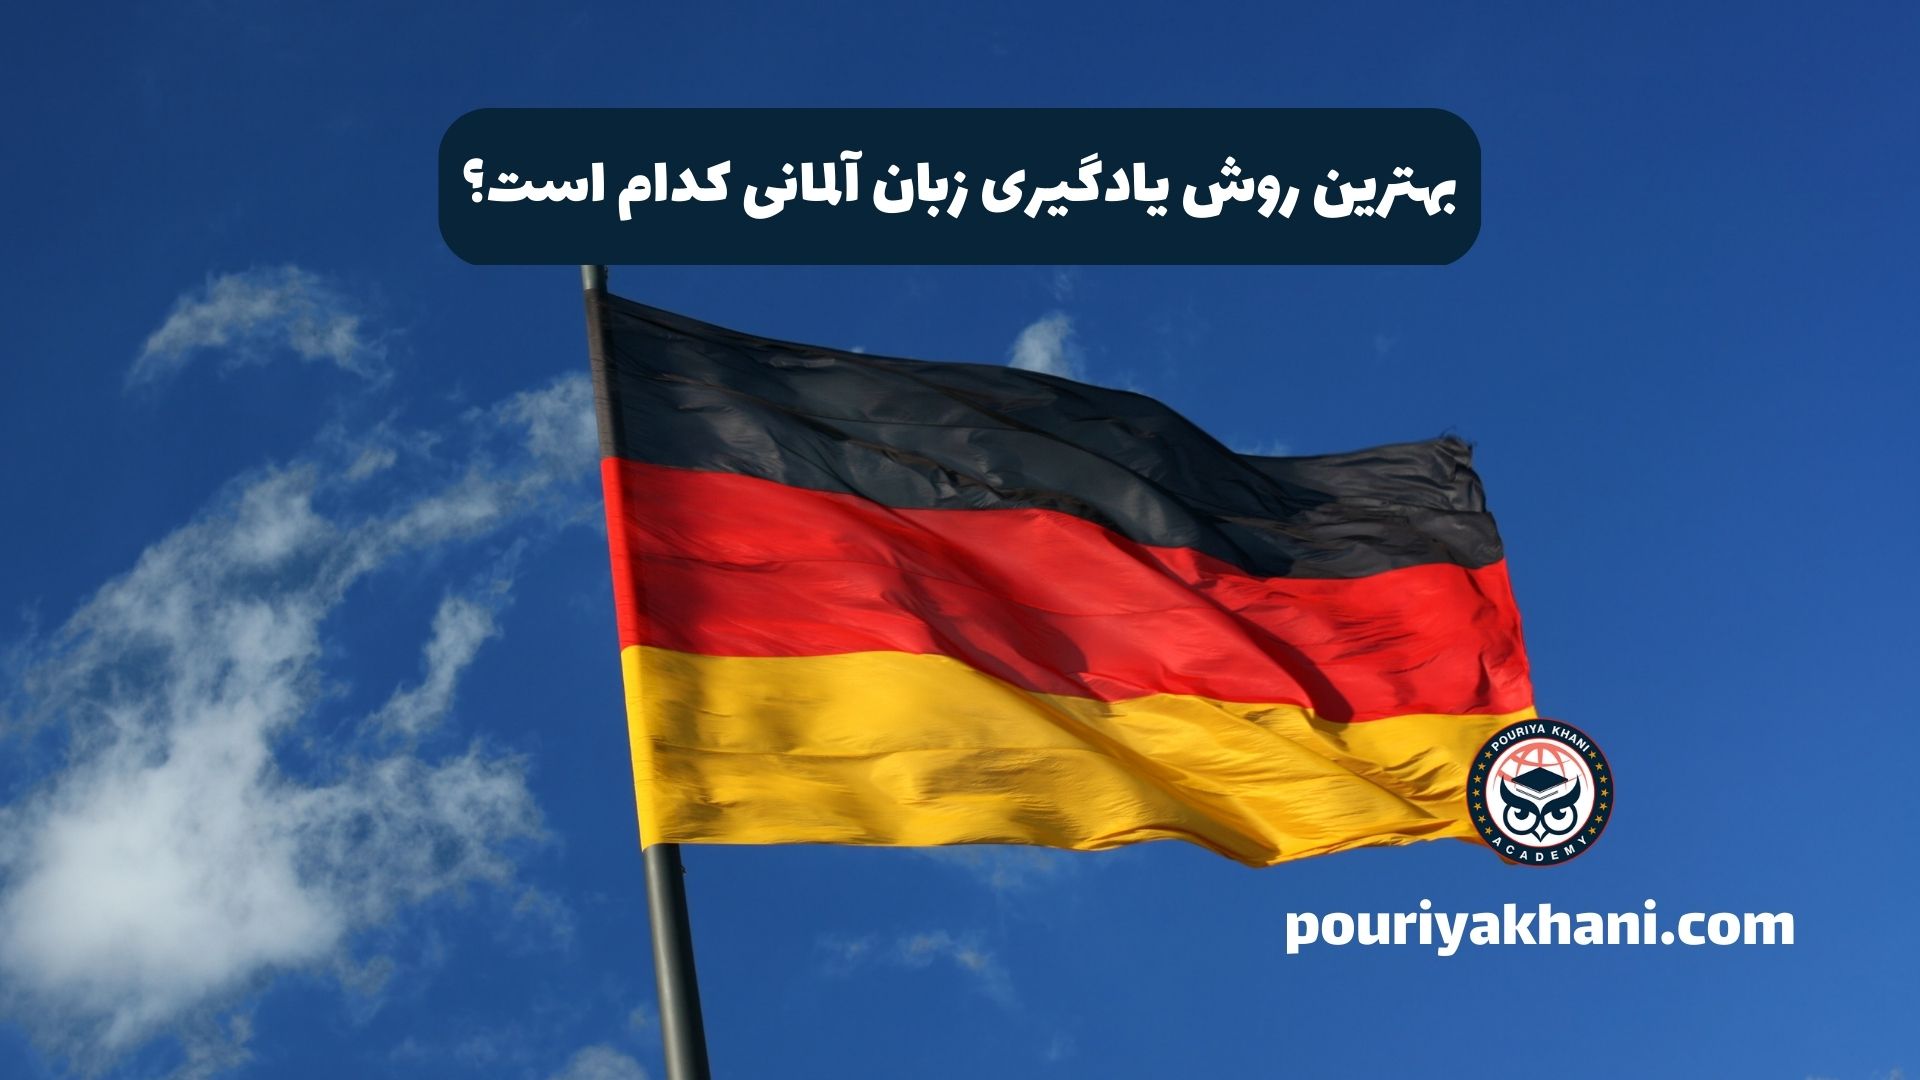 بهترین روش یادگیری زبان آلمانی کدام است؟